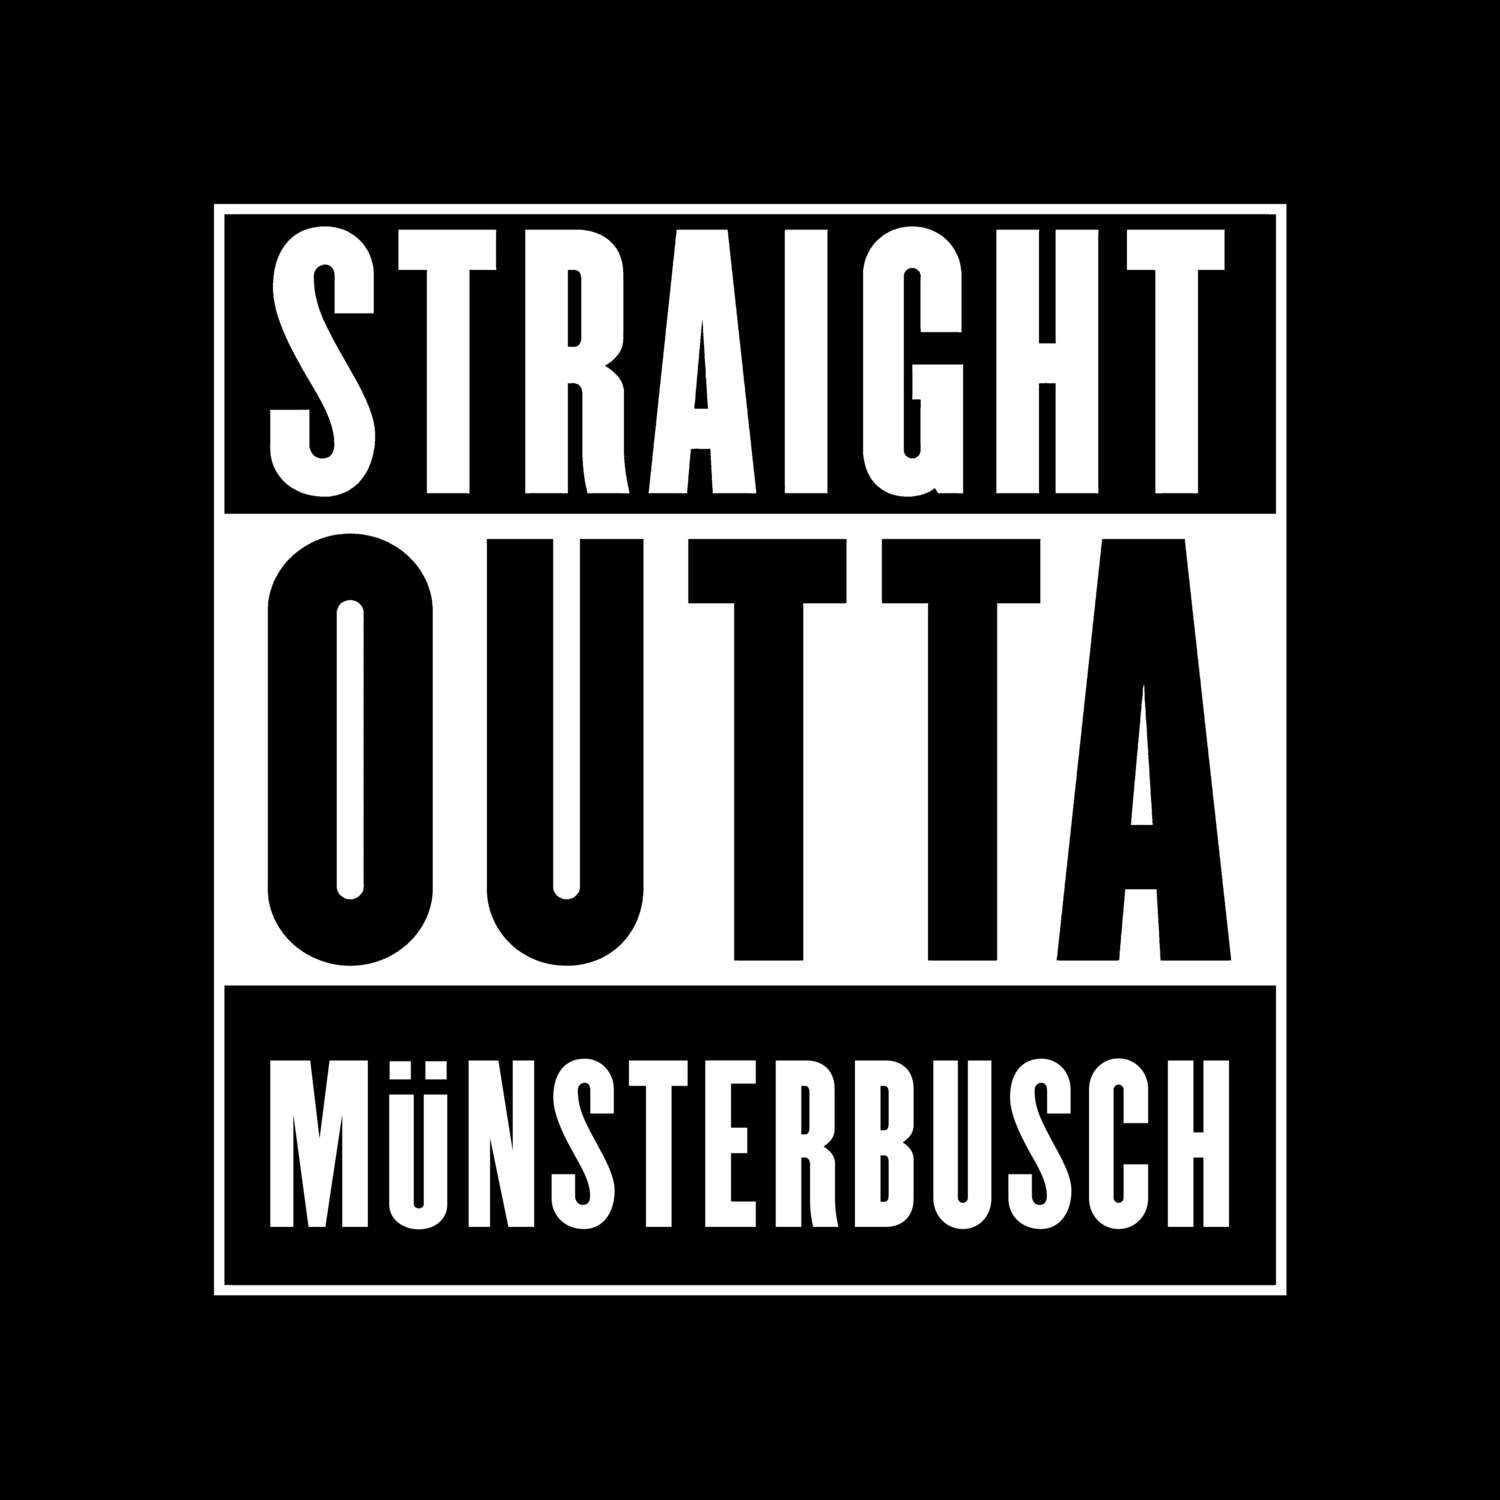 Münsterbusch T-Shirt »Straight Outta«